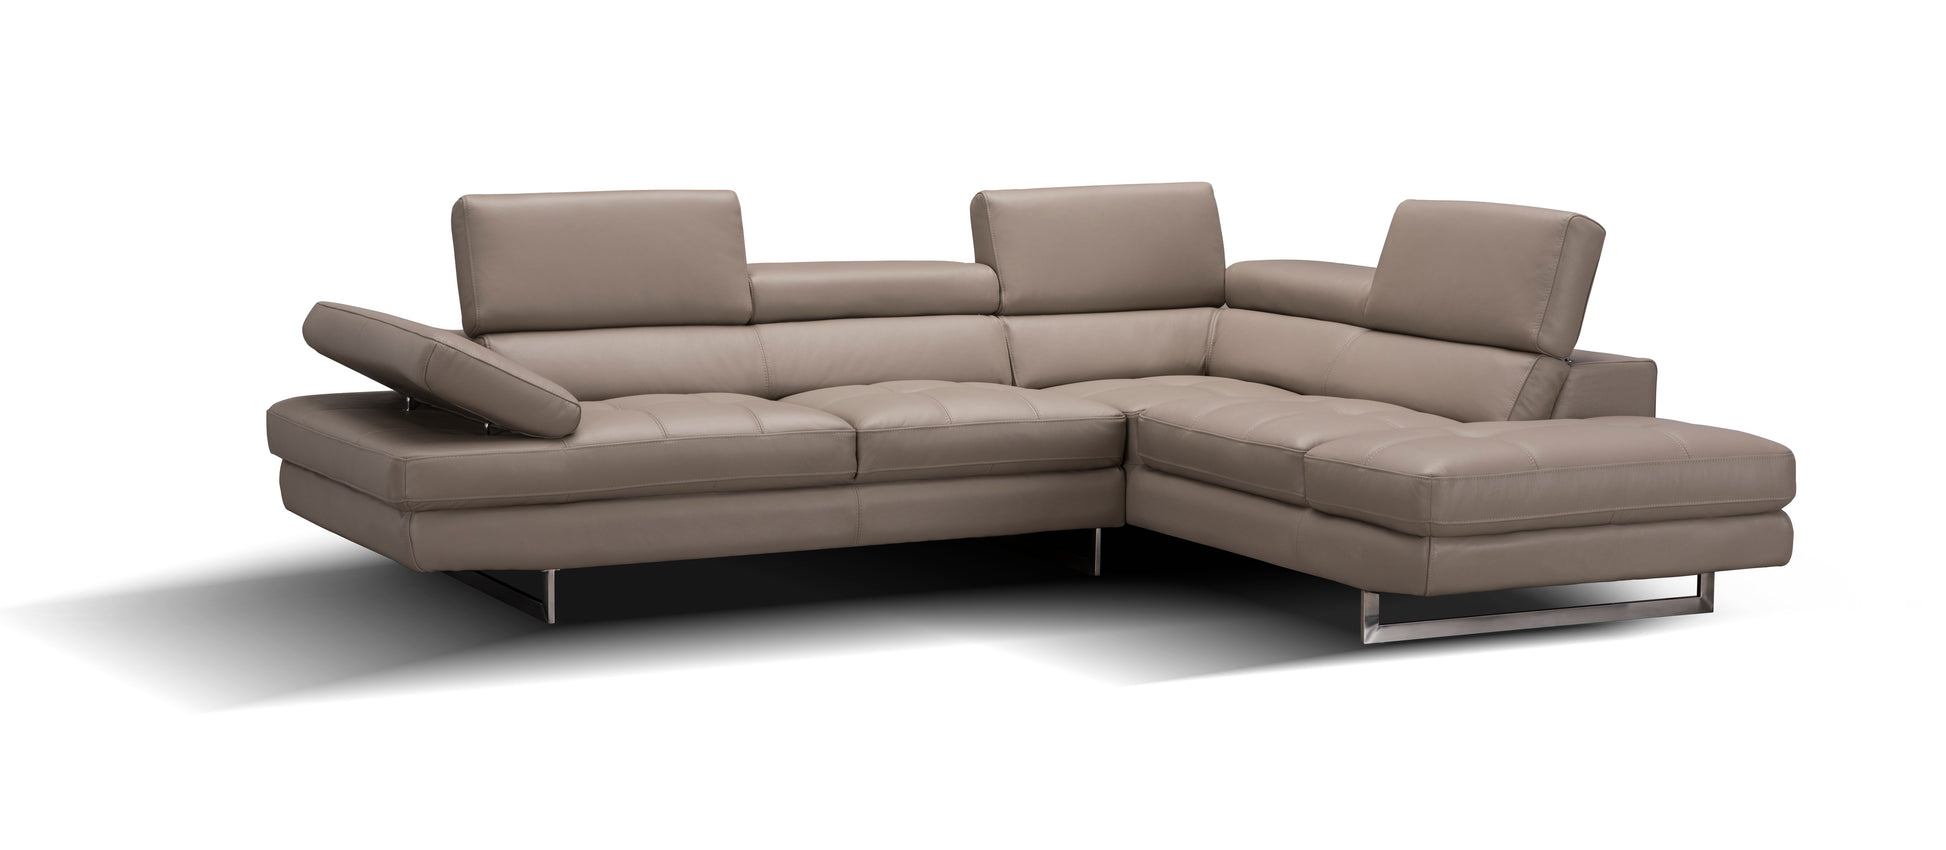 A761 Italian Leather Sectional Sofa Slate Peanut RHF by JM